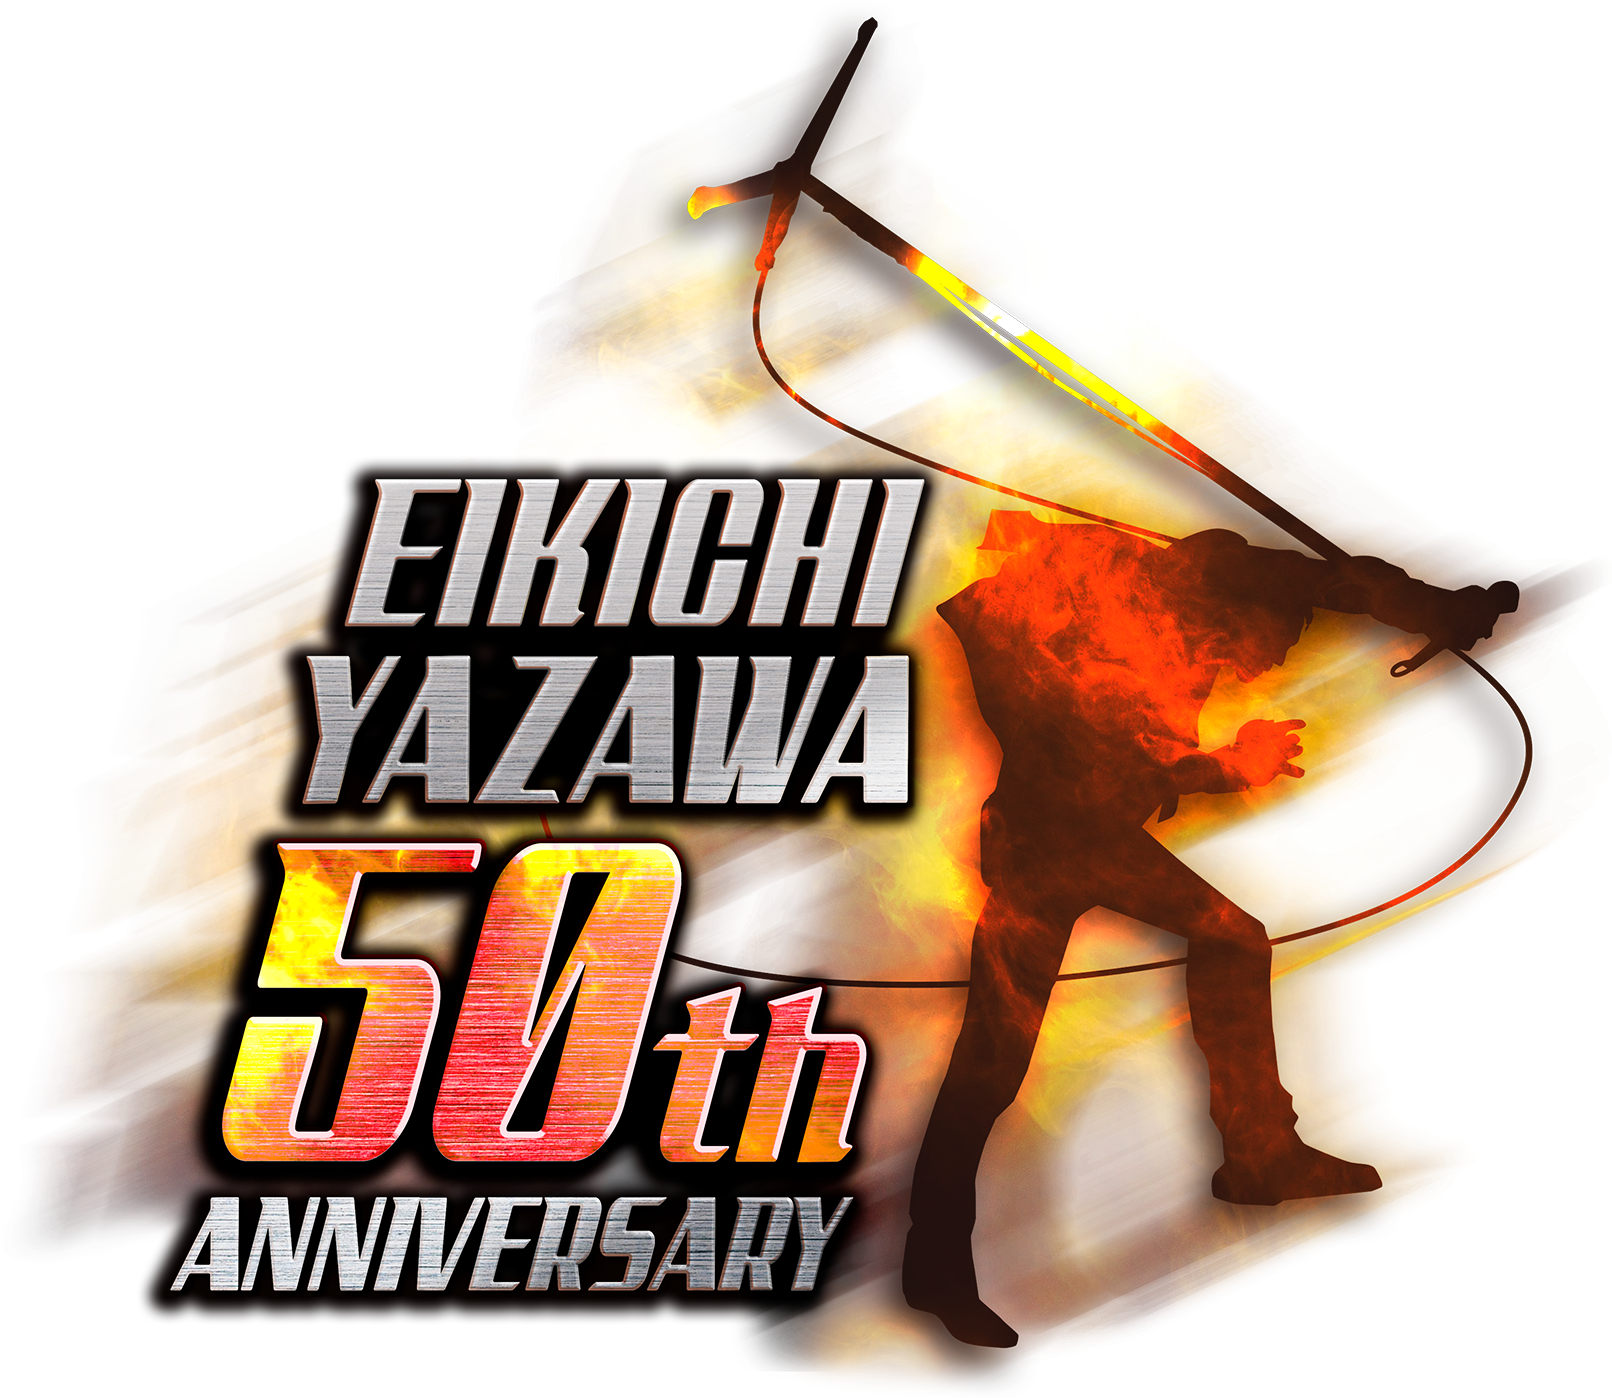 EIKICHI YAZAWA 50th